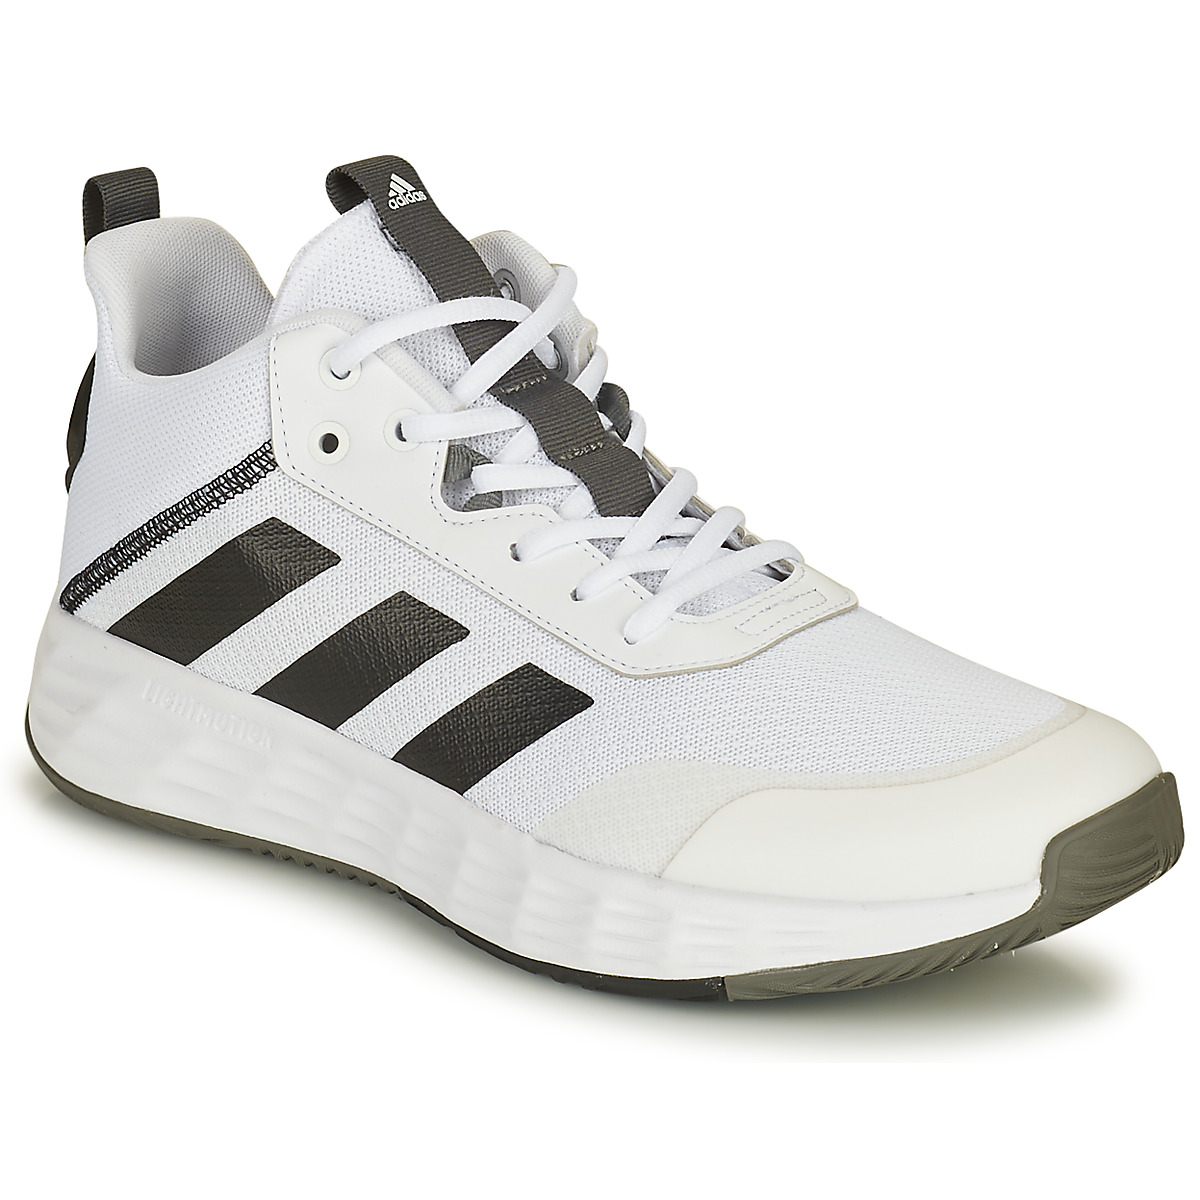 Παπούτσια του Μπάσκετ adidas OWNTHEGAME 2.0